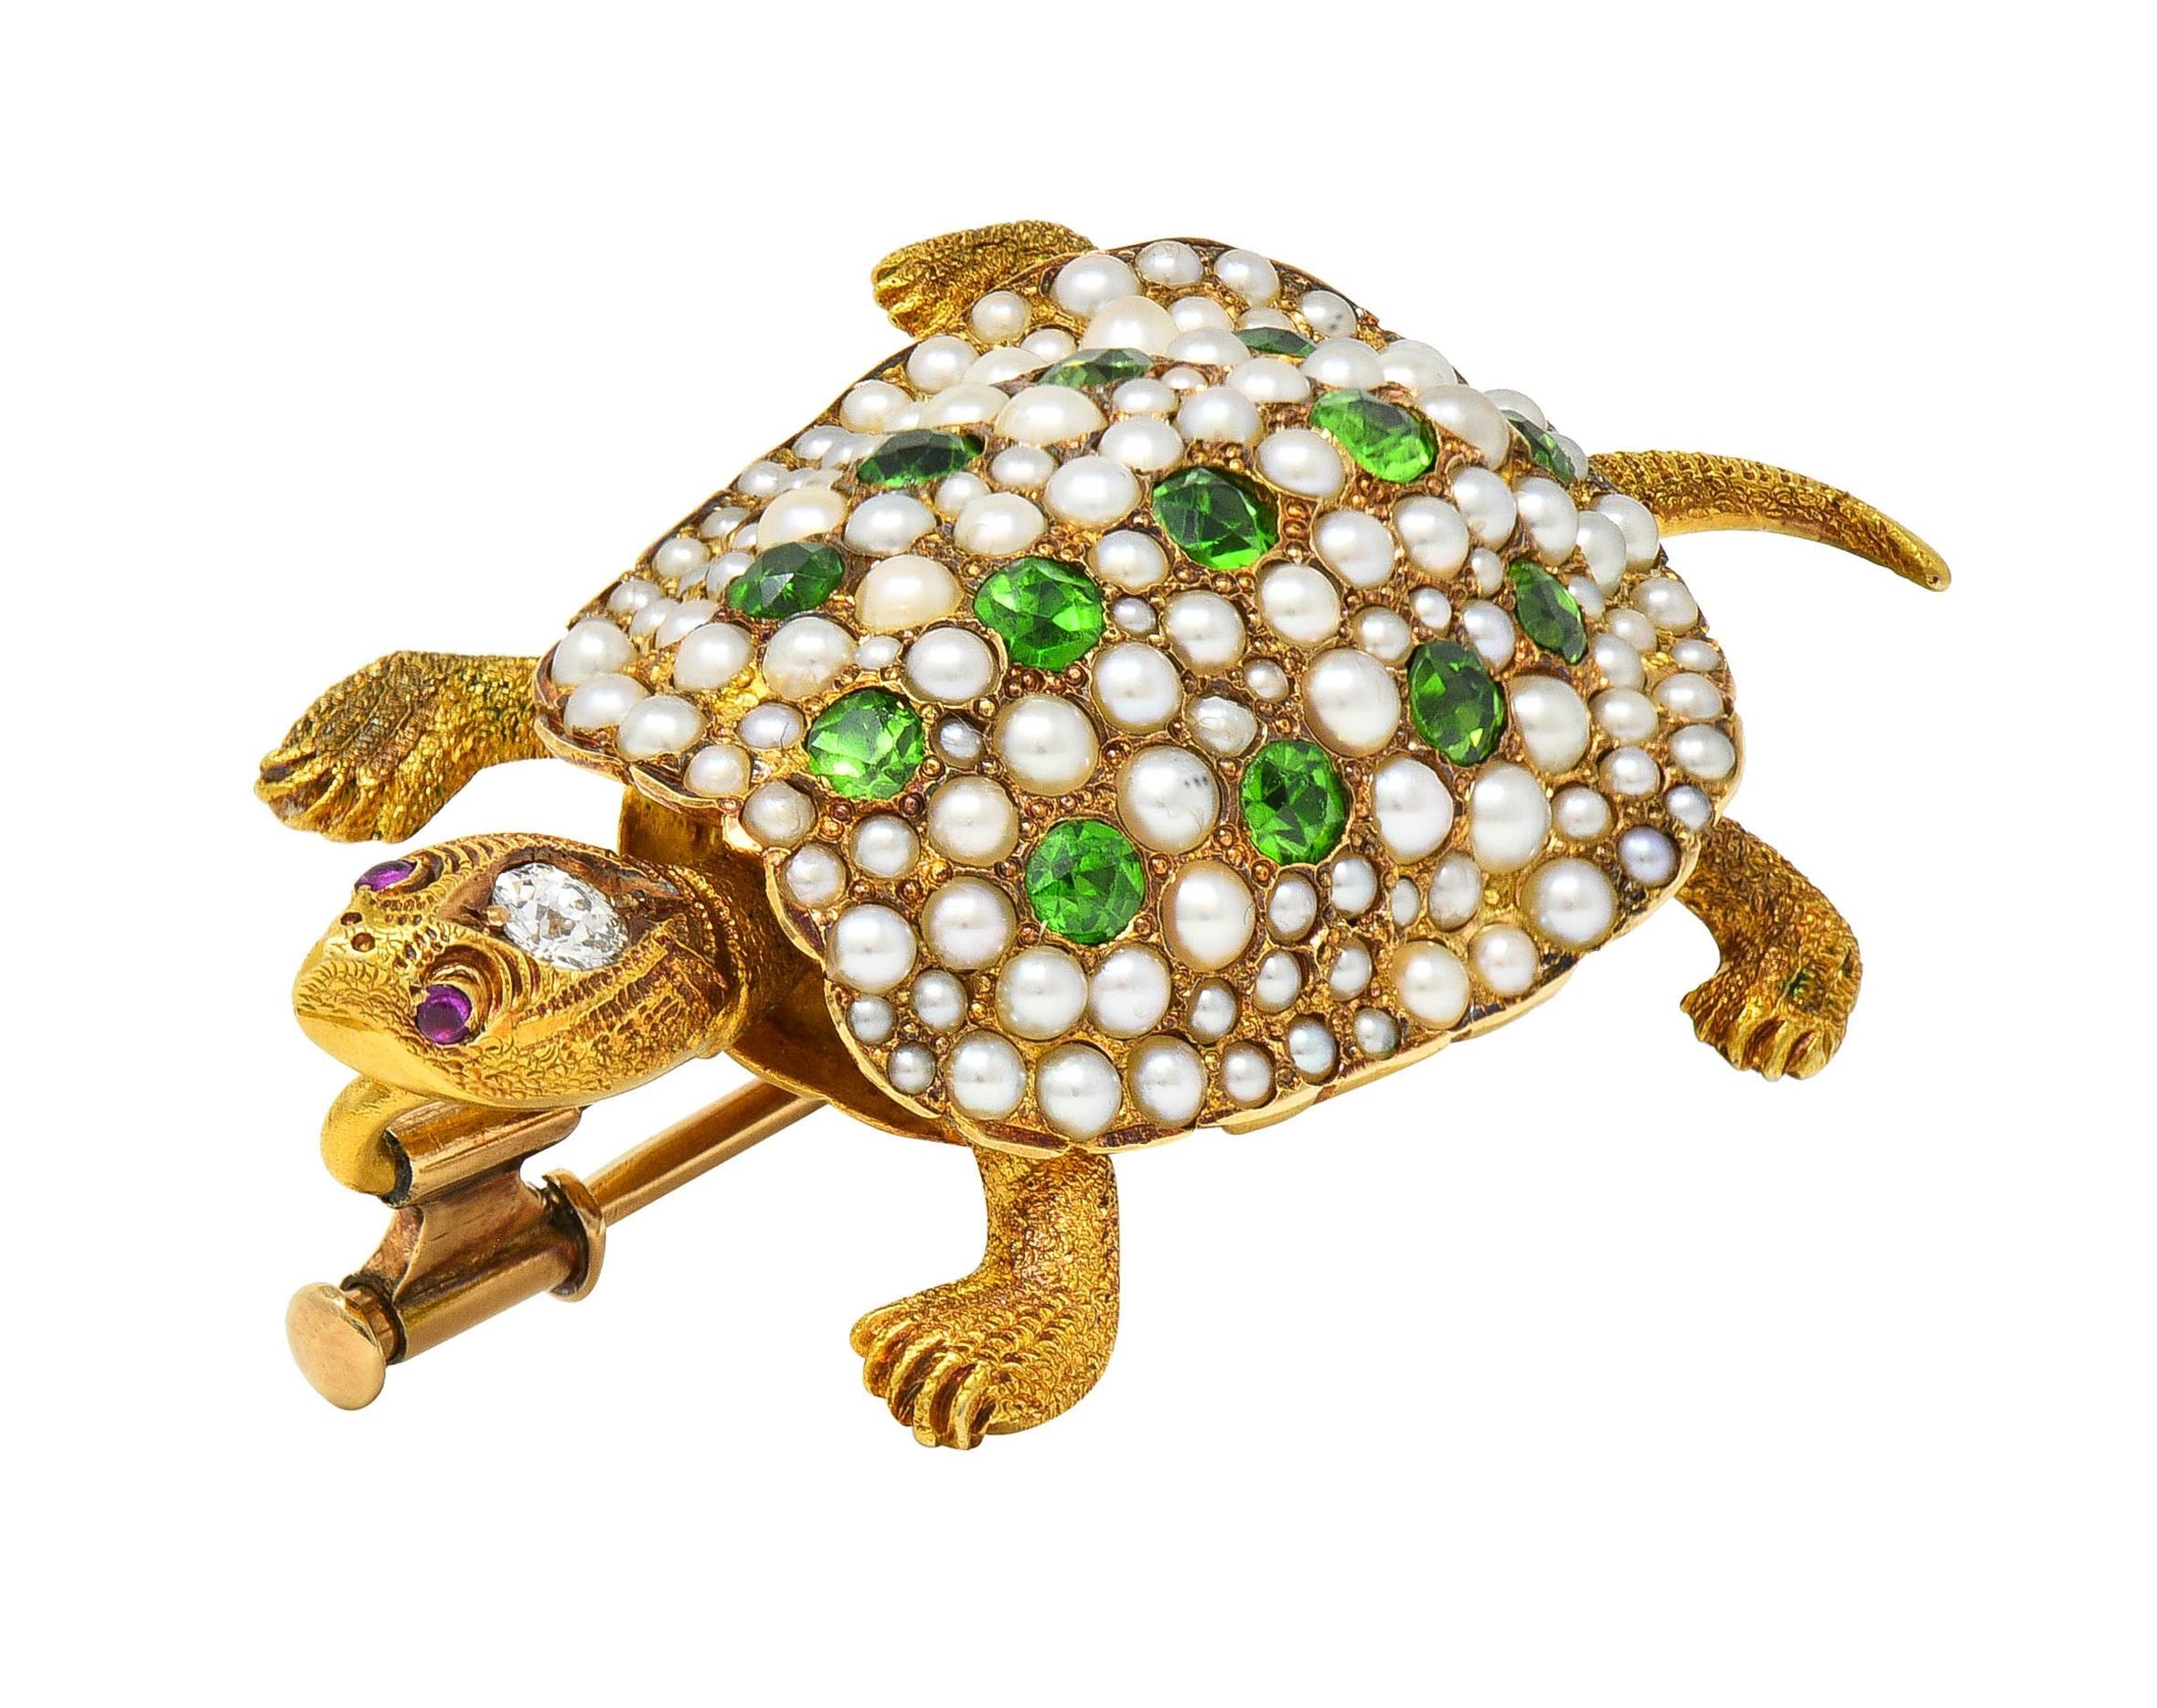 Entworfen als stilisierte und dimensionale Schildkröte mit einem strukturierten Kopf, Beinen und Schwanz 
Mit einer gewölbten Muschelperle, besetzt mit Demantoid-Granaten und Perlen 
Demantoid-Granate sind rund geschliffen und wiegen insgesamt etwa